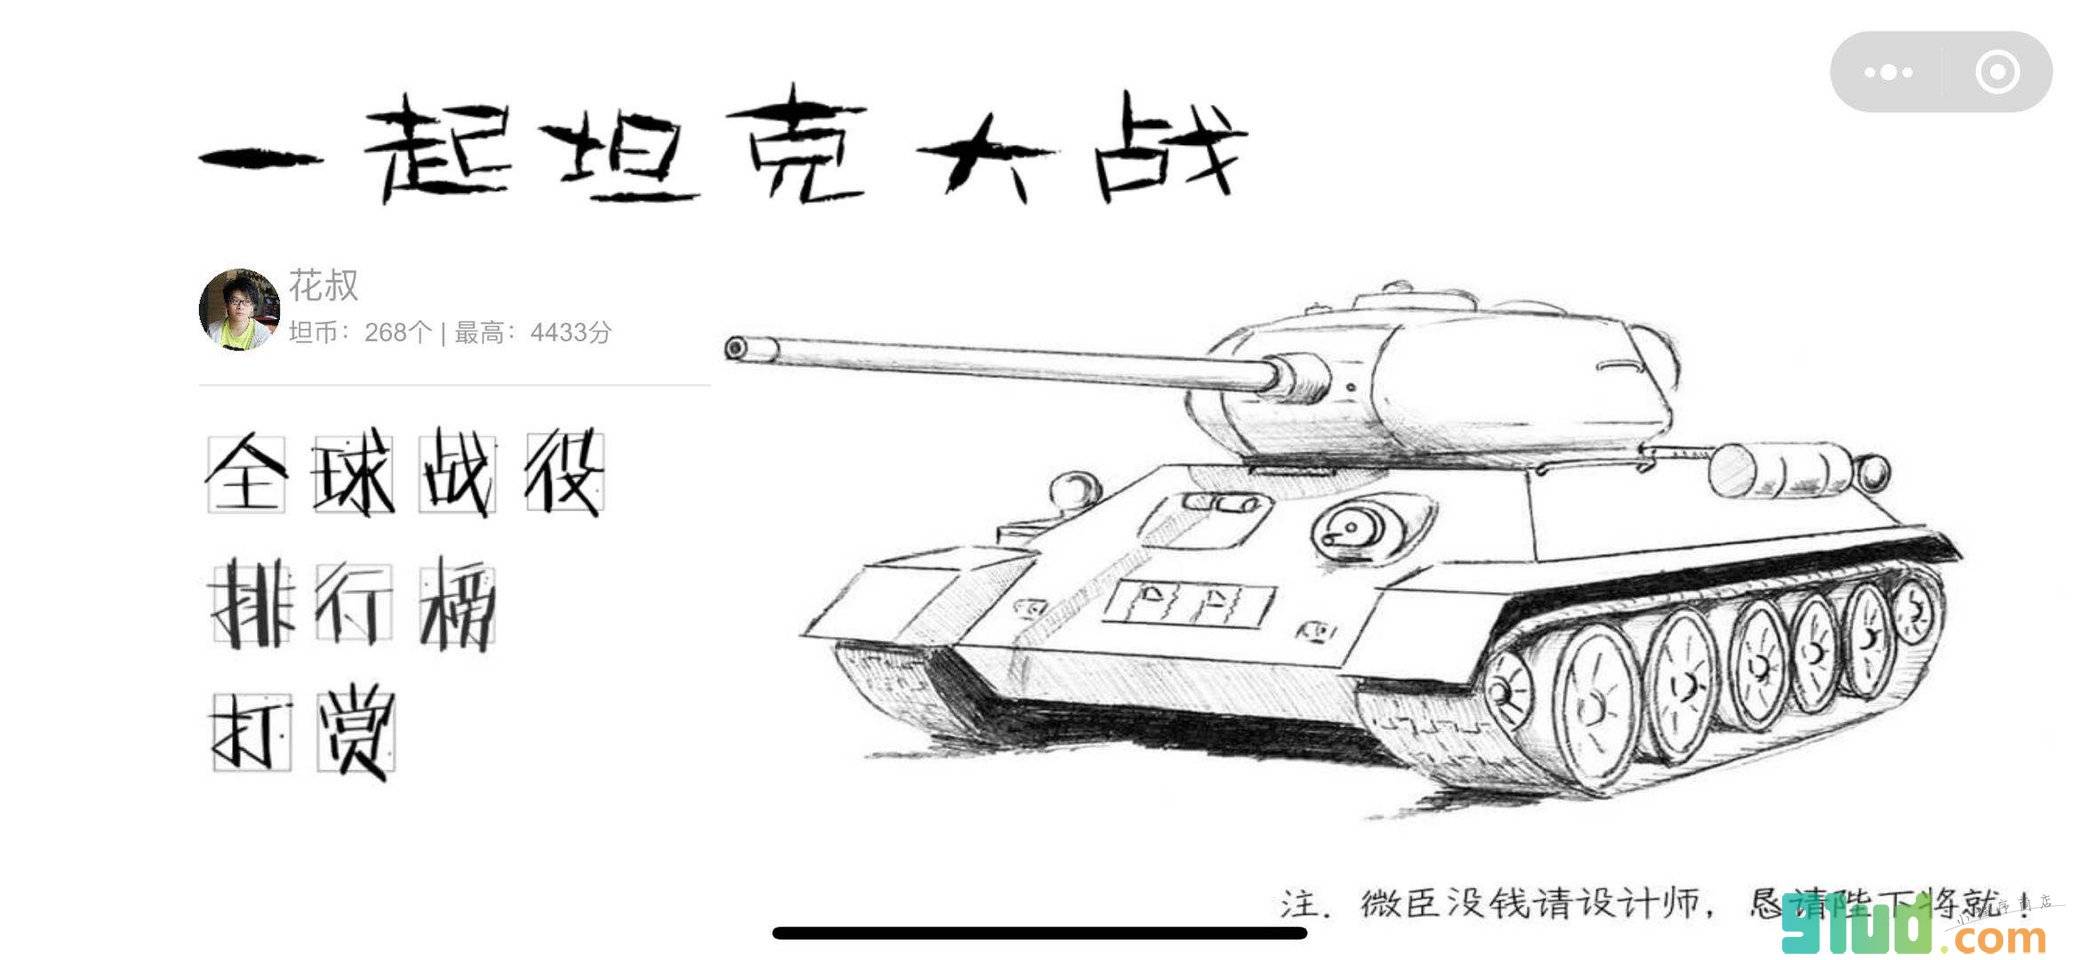 坦克小战截图1